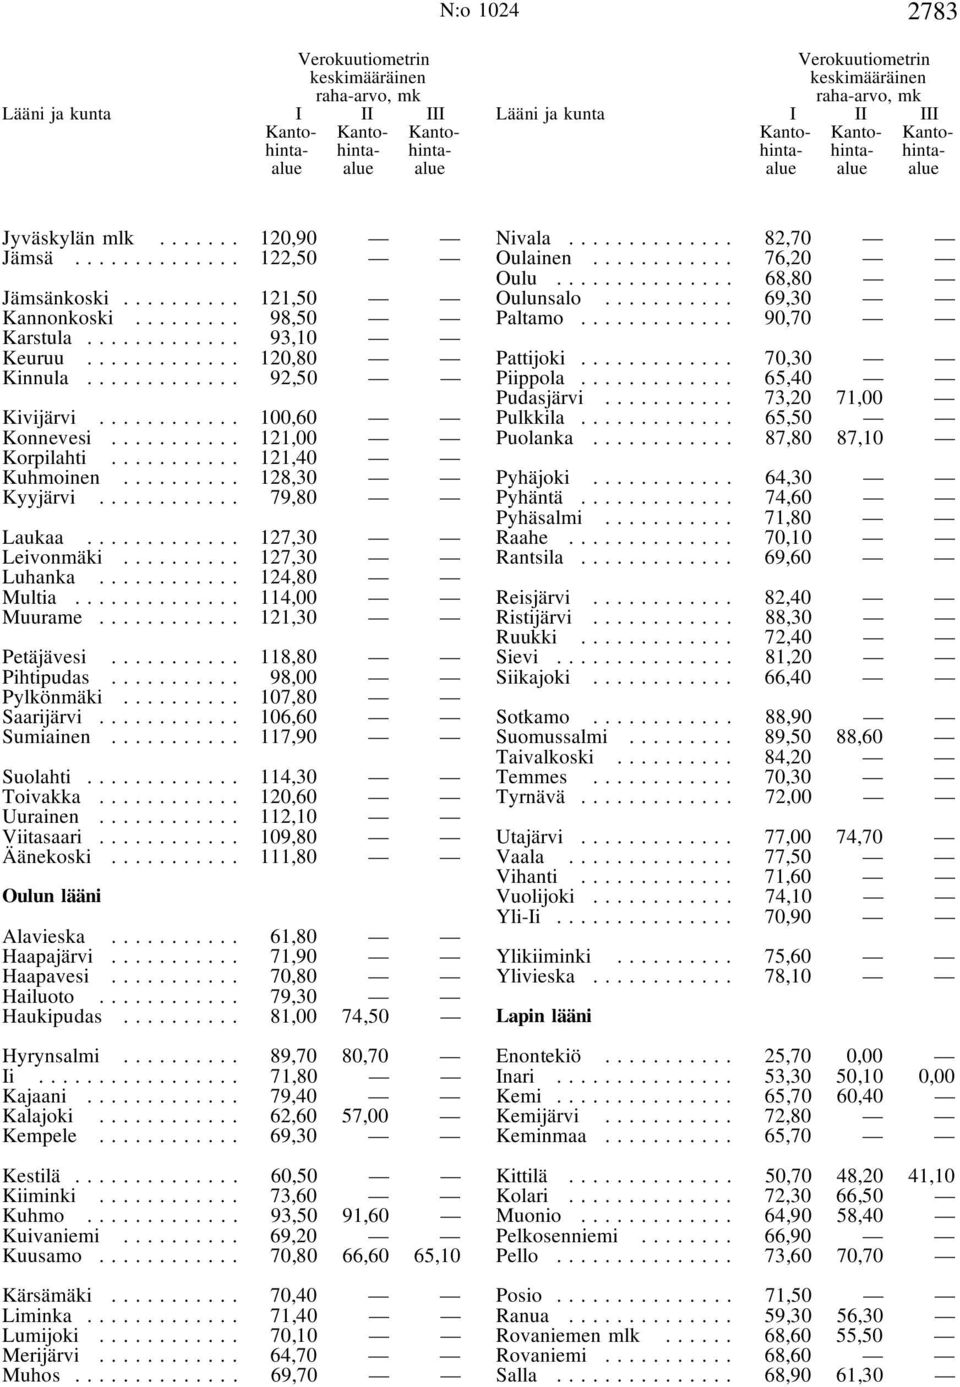 .. 107,80 Saarijärvi... 106,60 Sumiainen... 117,90 Suolahti... 114,30 Toivakka... 120,60 Uurainen... 112,10 Viitasaari... 109,80 Äänekoski... 111,80 Oulun lääni Alavieska... 61,80 Haapajärvi.